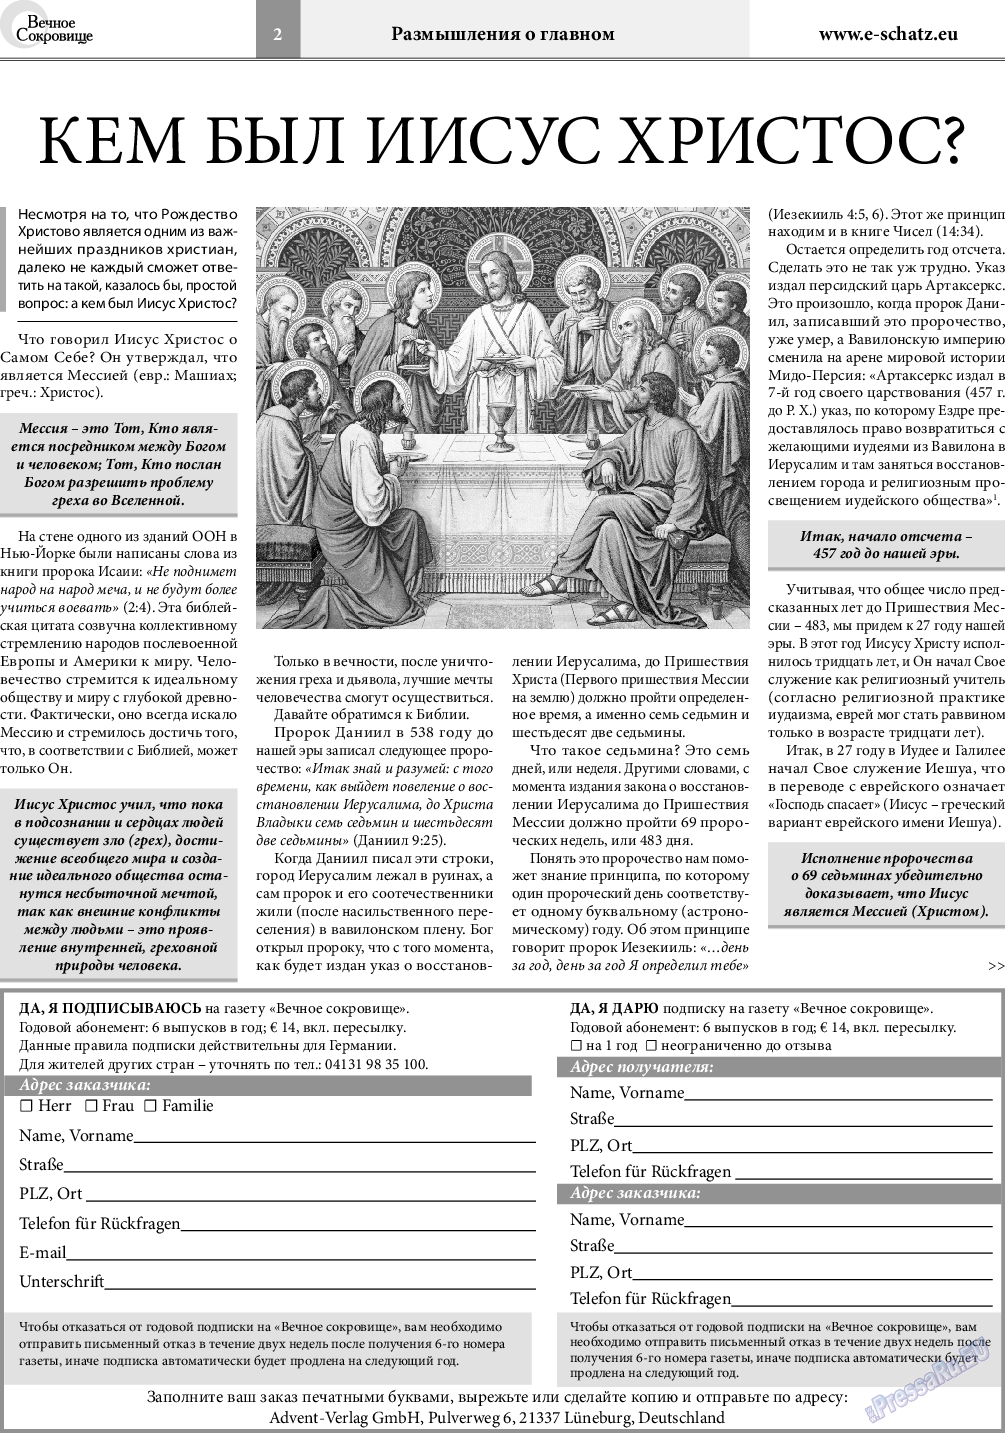 Вечное сокровище, газета. 2018 №6 стр.2